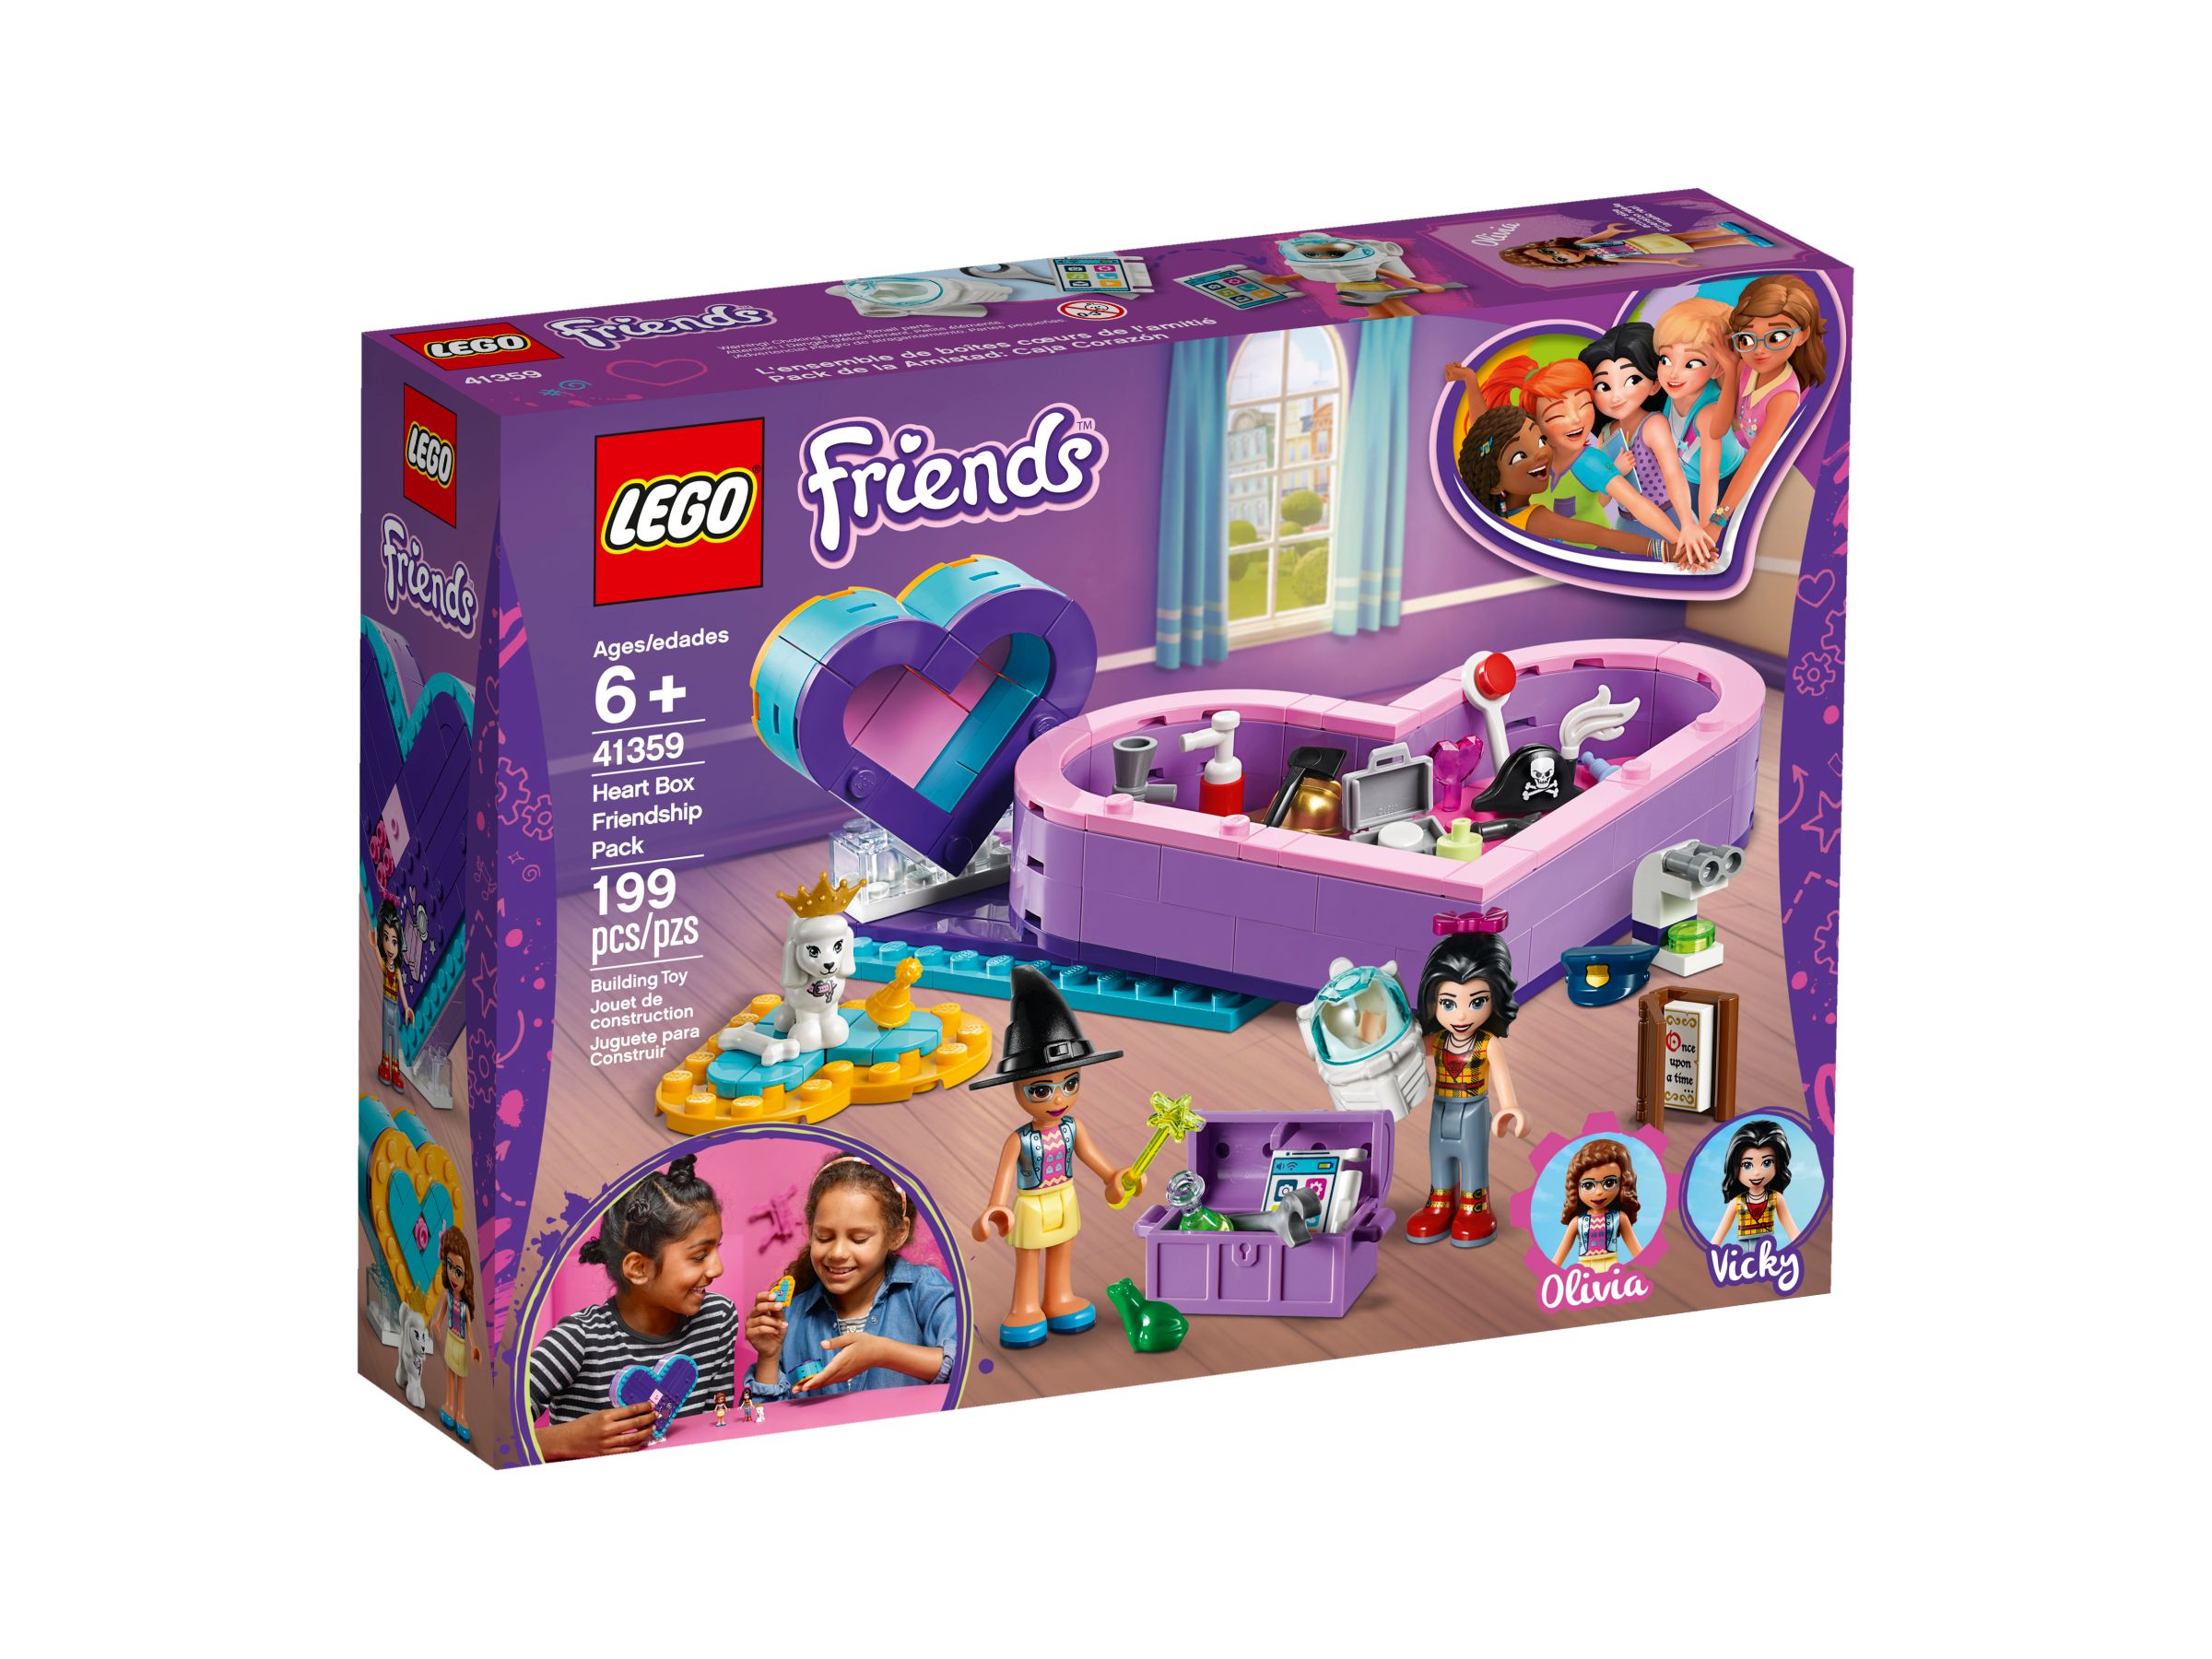 LEGO Friends 41359 Herzbox-Freundschaftsset LEGO_41359_alt1.jpg